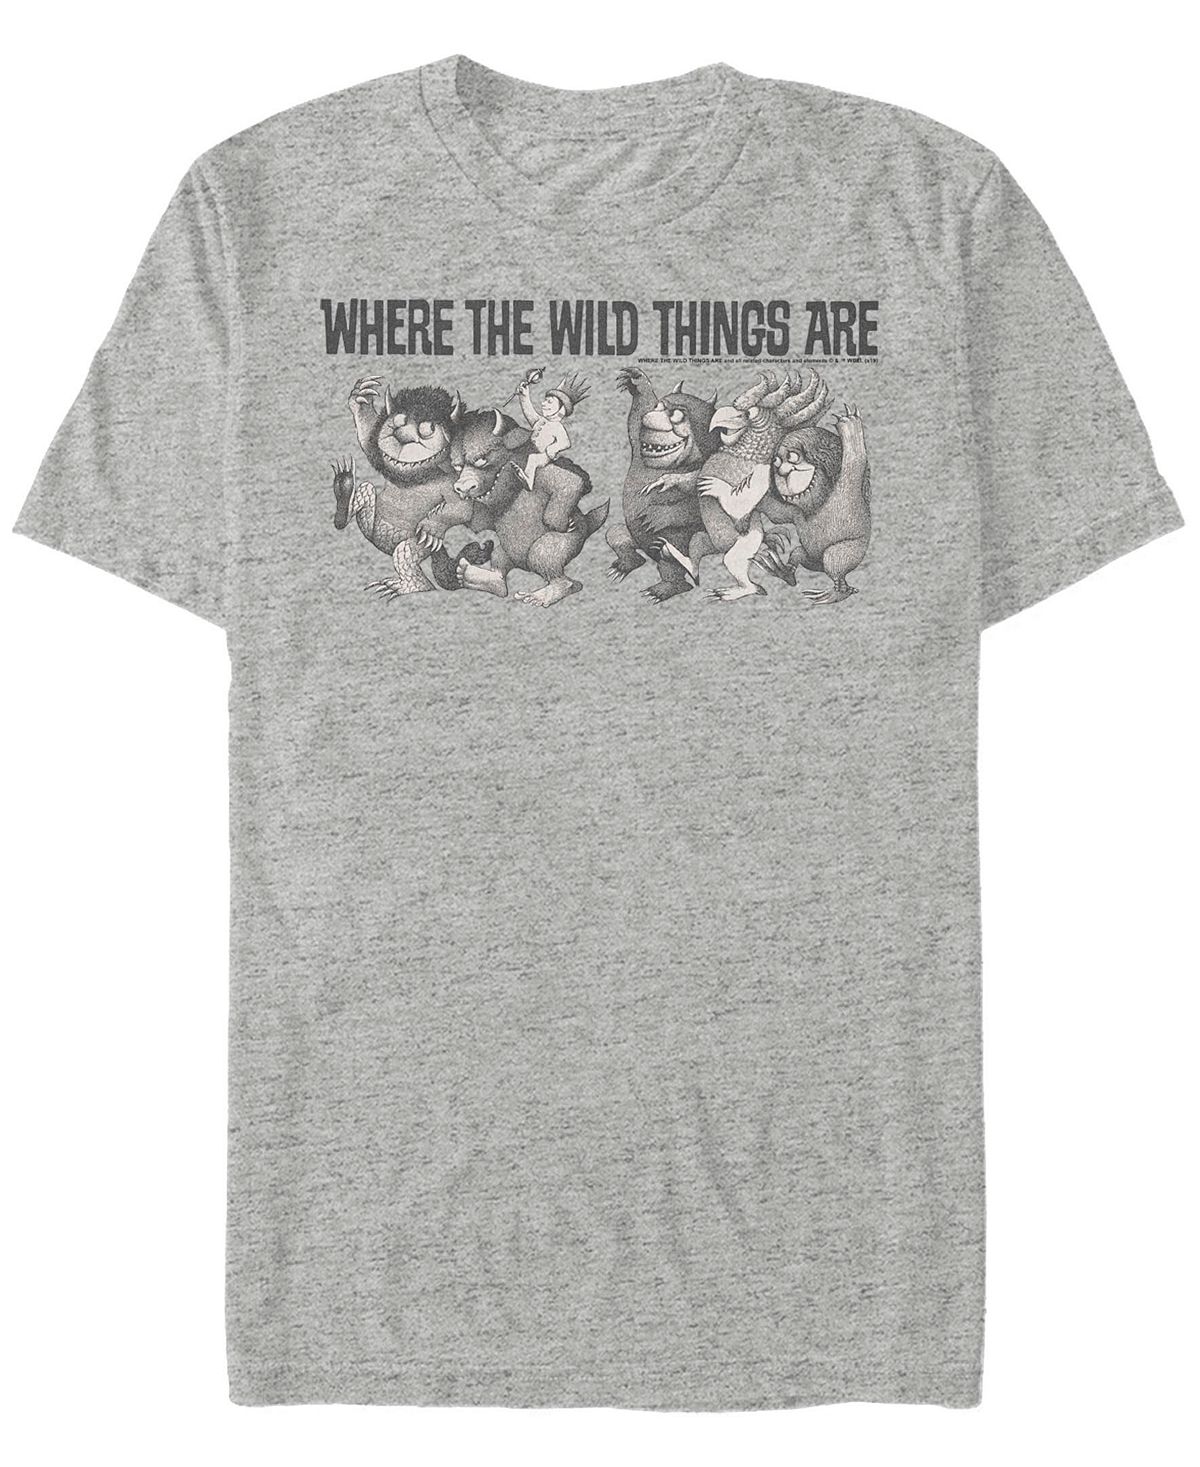 Мужская футболка с коротким рукавом where the wild things are max parade Fifth Sun, мульти